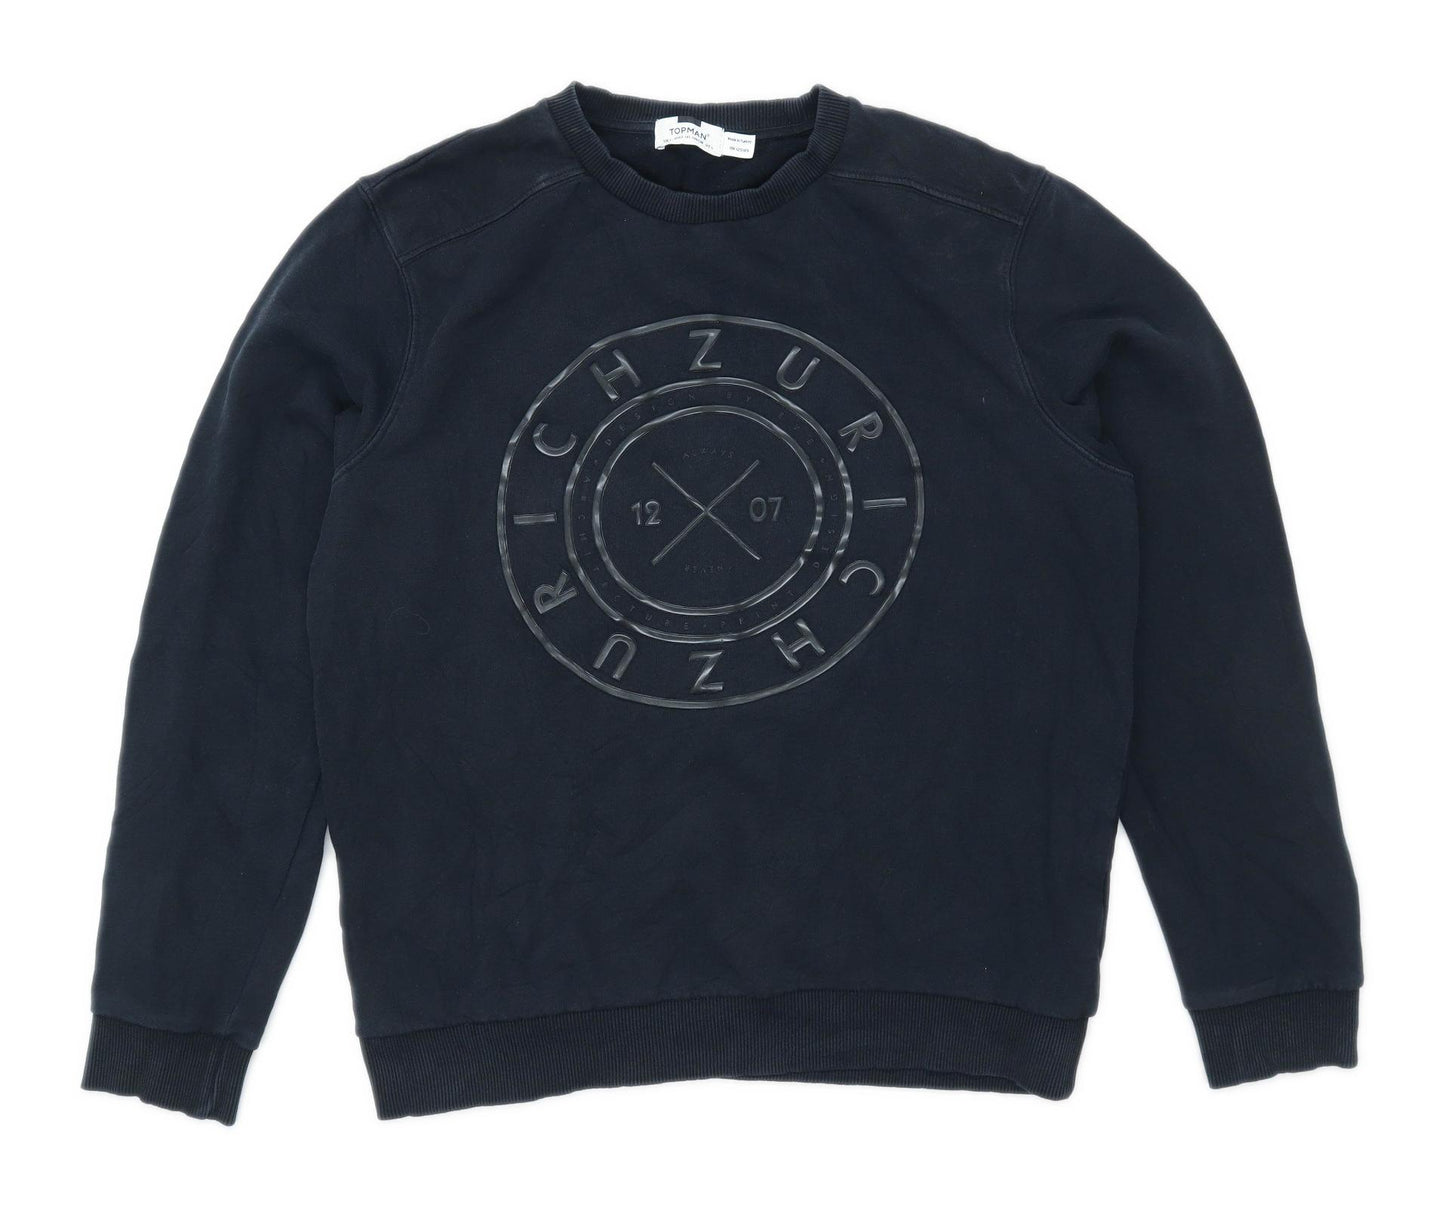 Topman Mens Size L Cotton Blend Graphic Black Sweatshirt